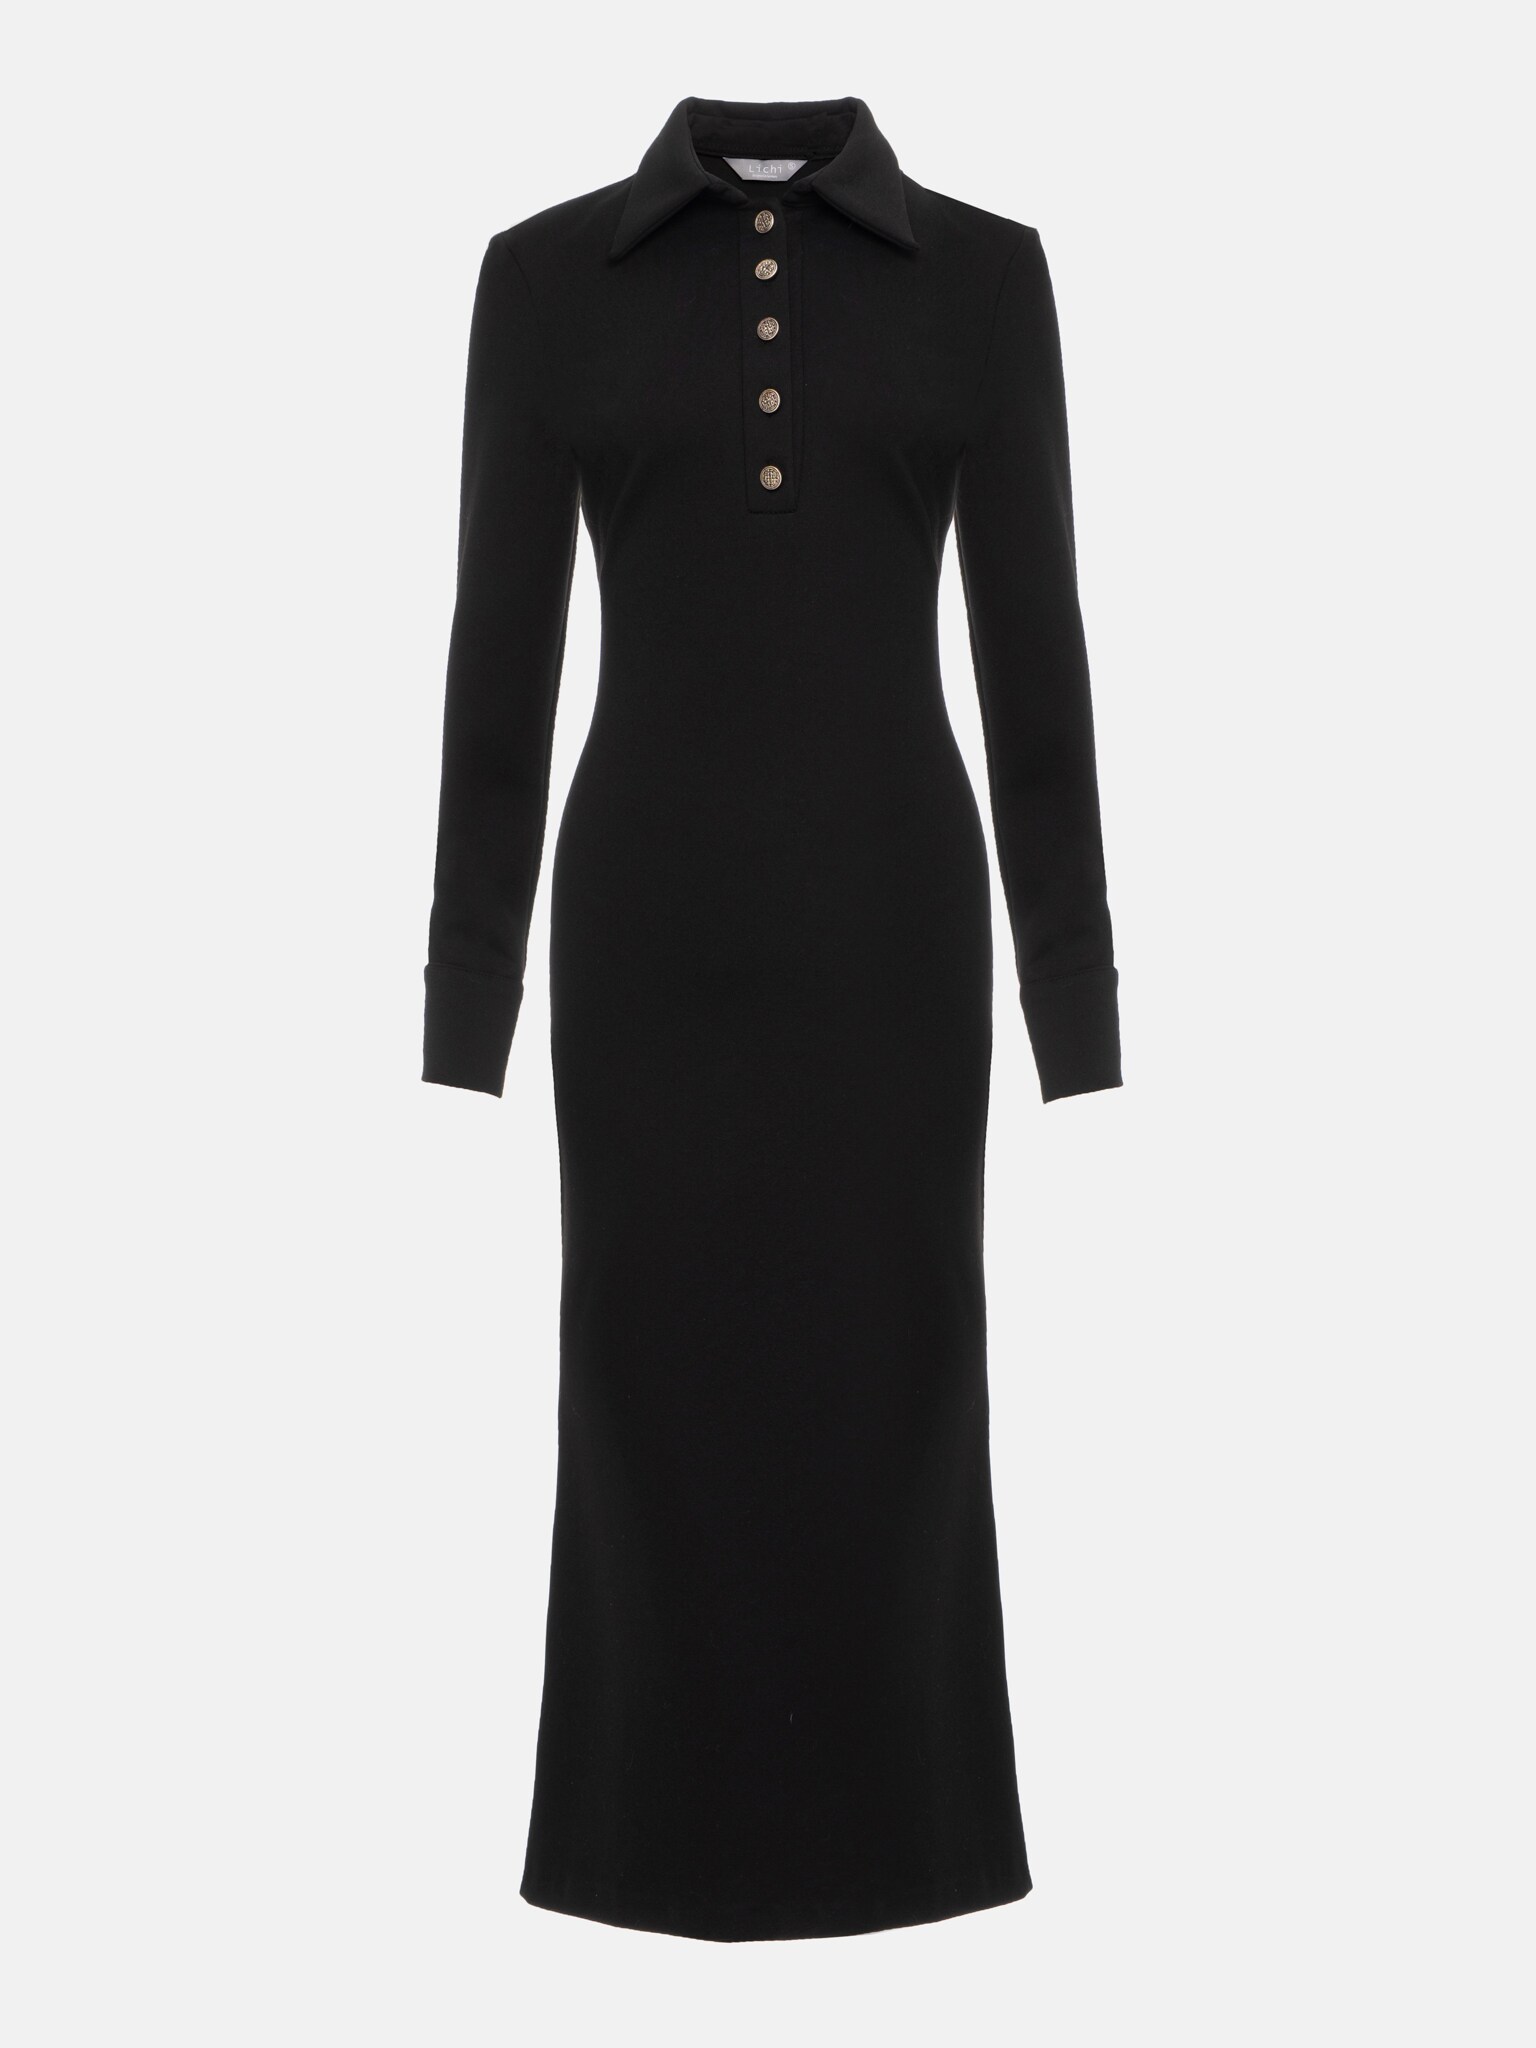 Collared buttoned midi dress :: LICHI - Online fashion store